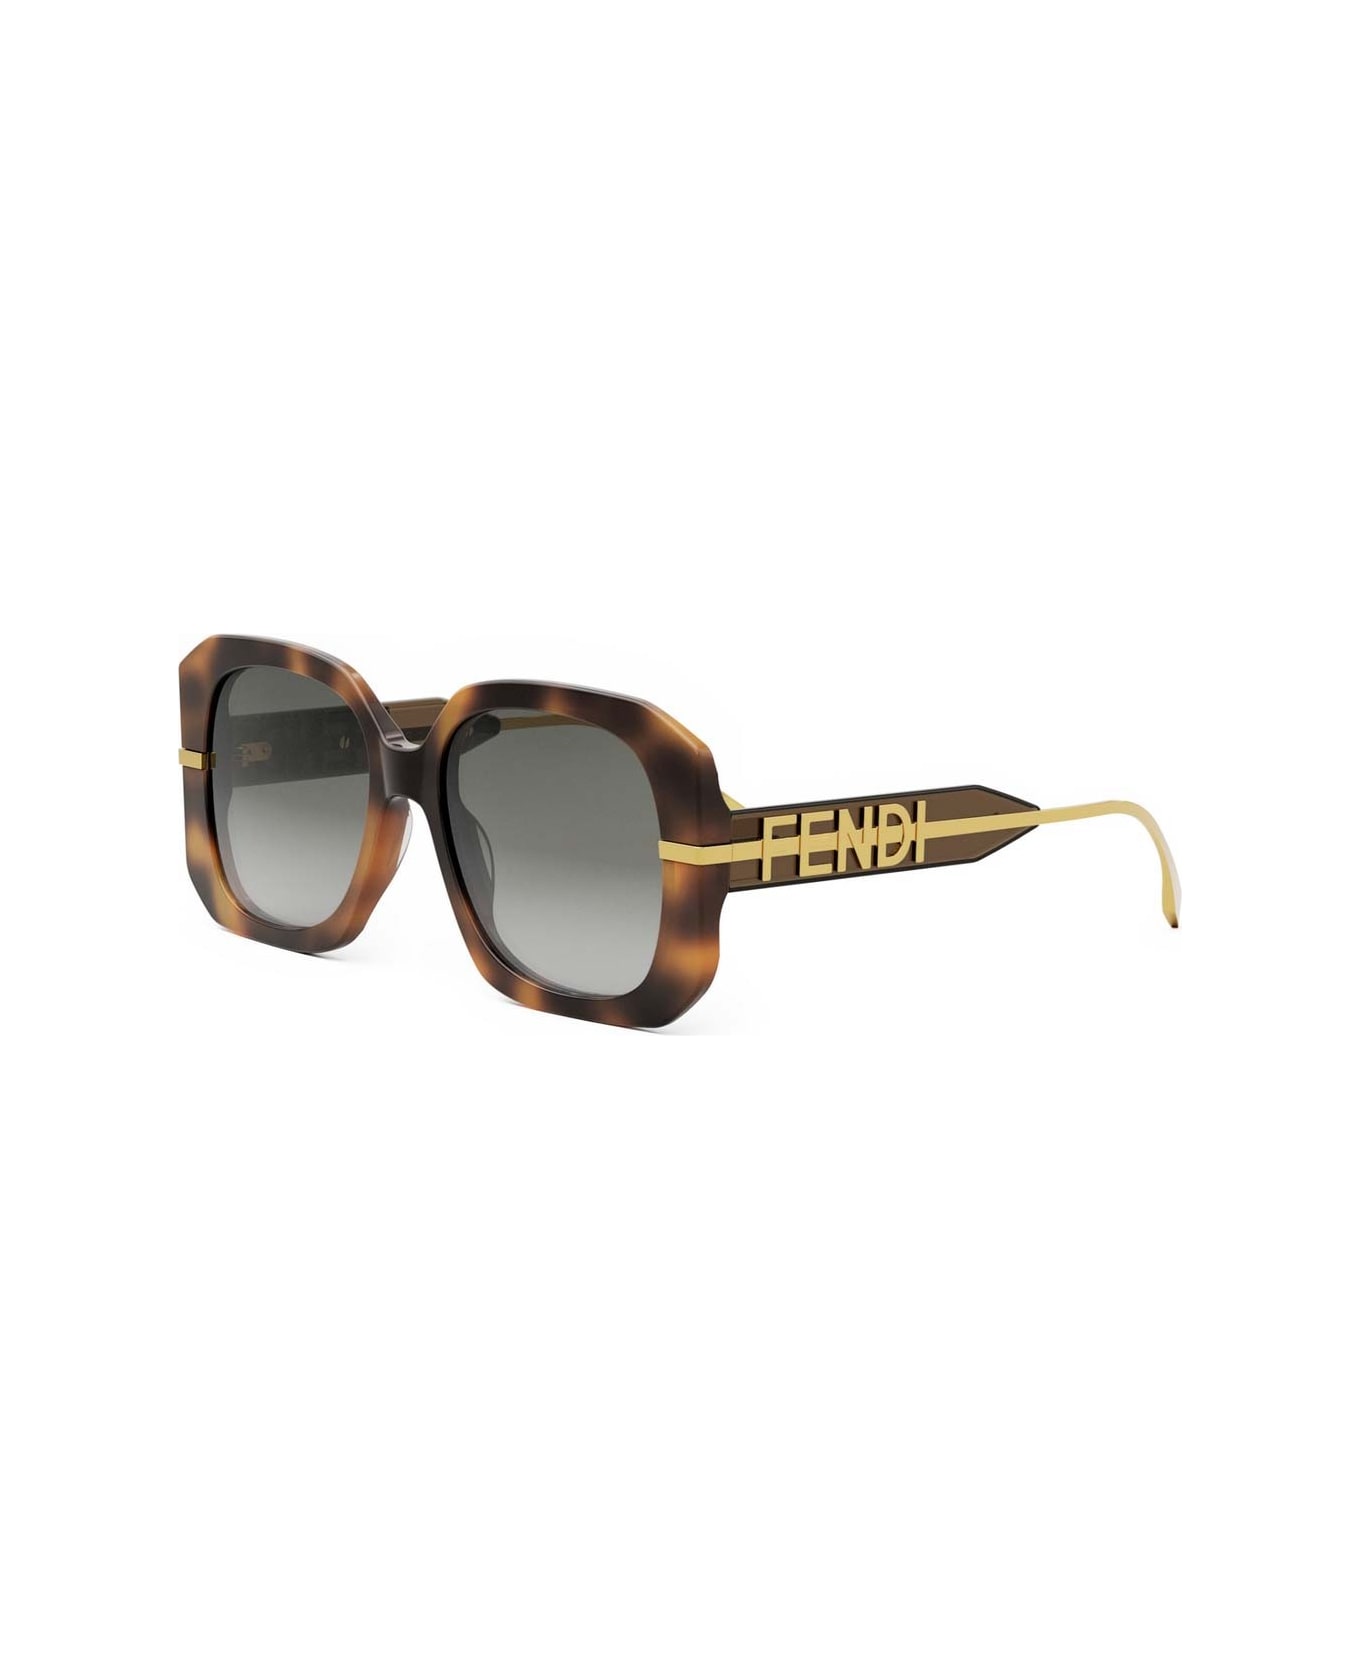 Fendi Eyewear Sunglasses - Havana/Grigio sfumato